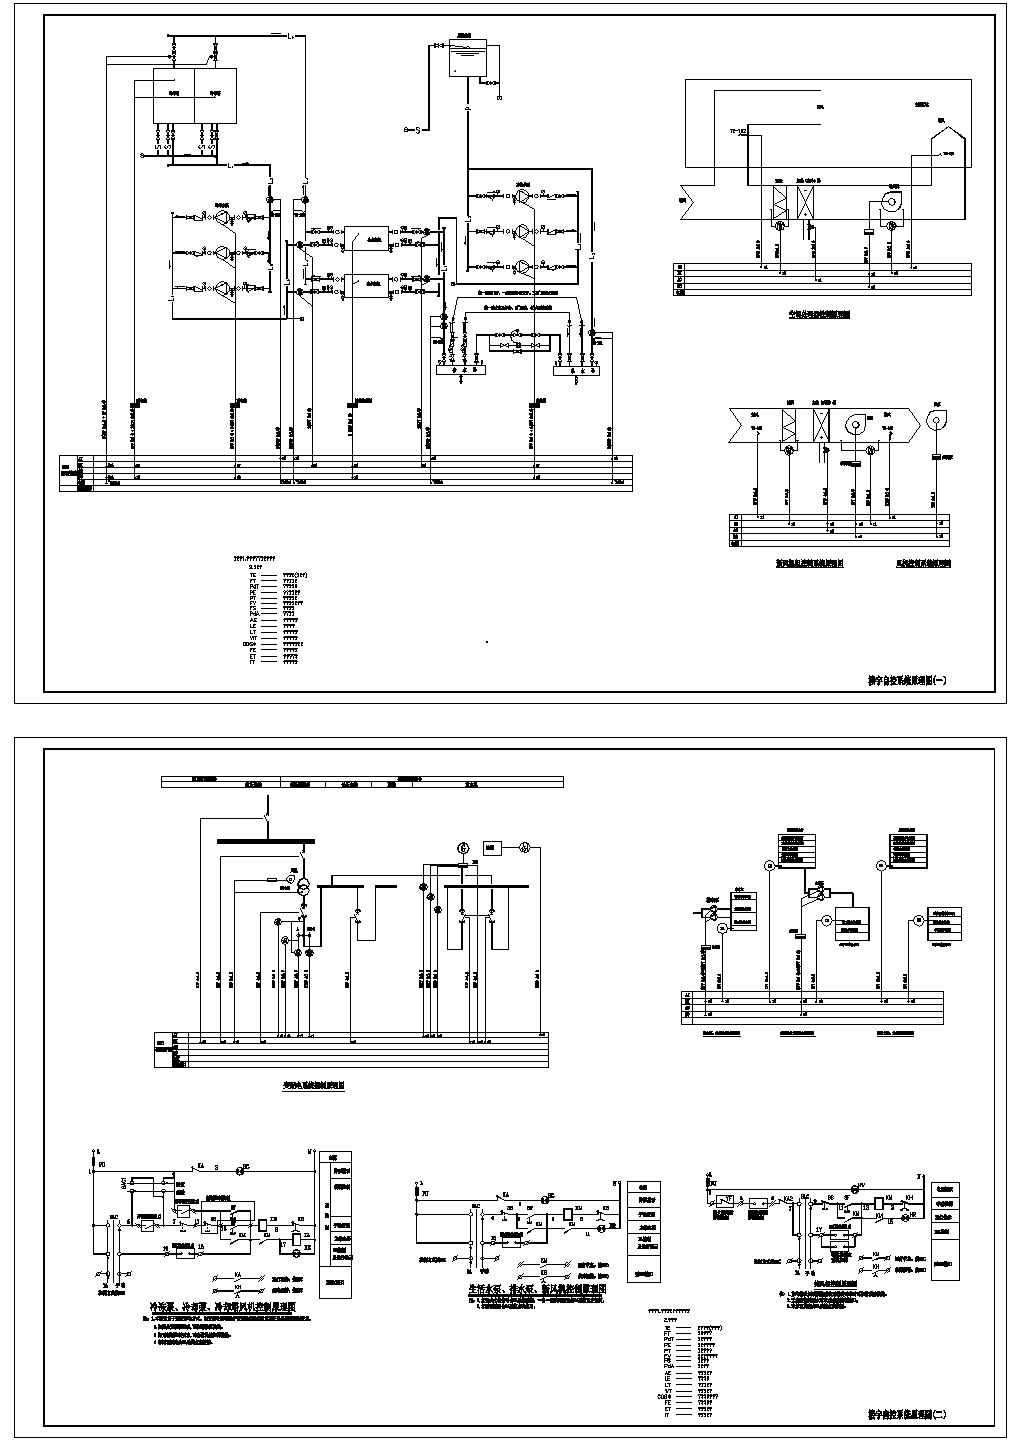 某标准楼宇自控系统电气控制原理设计CAD图纸